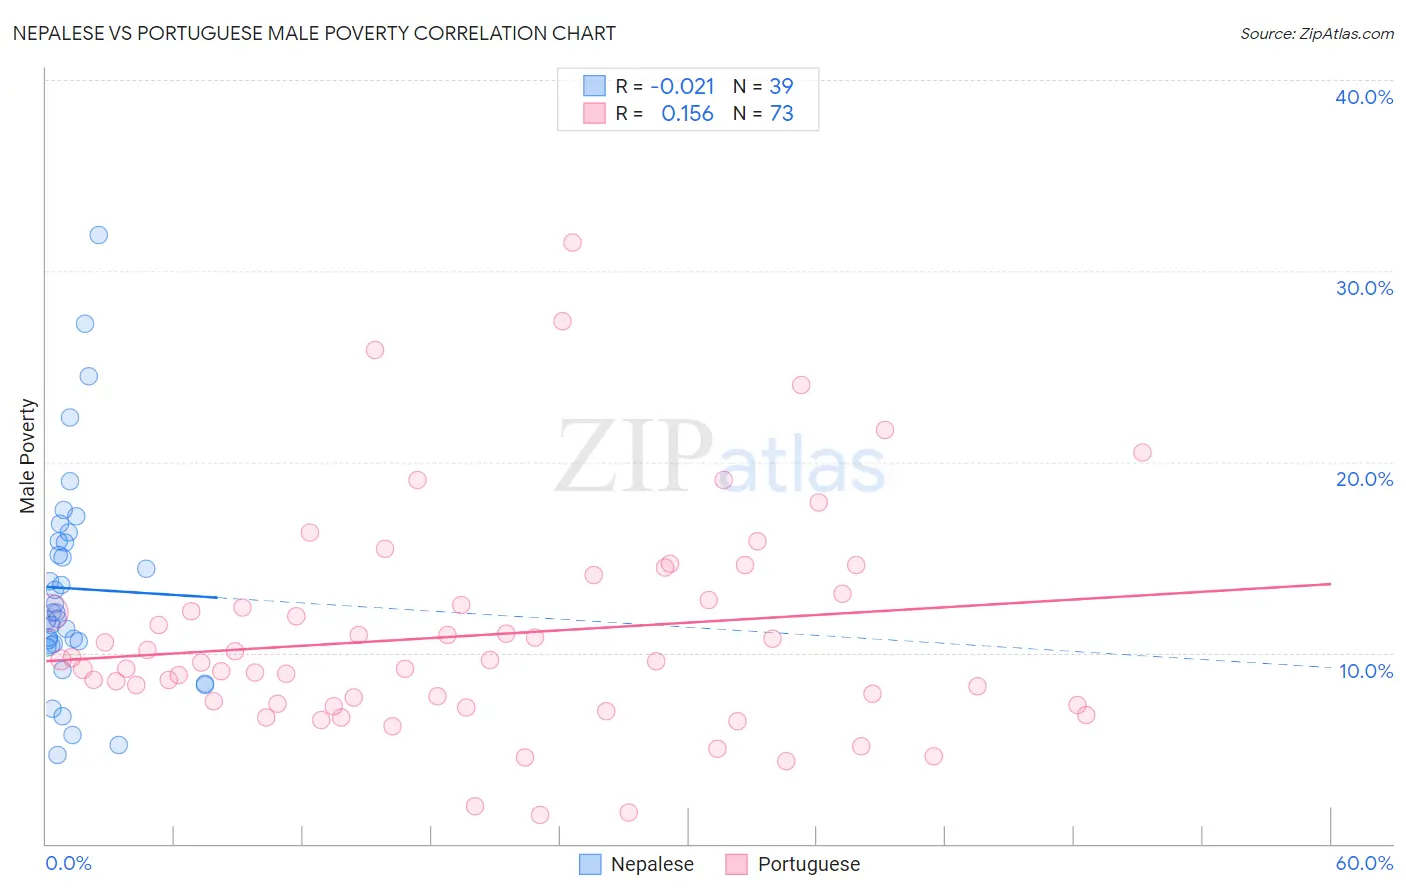 Nepalese vs Portuguese Male Poverty